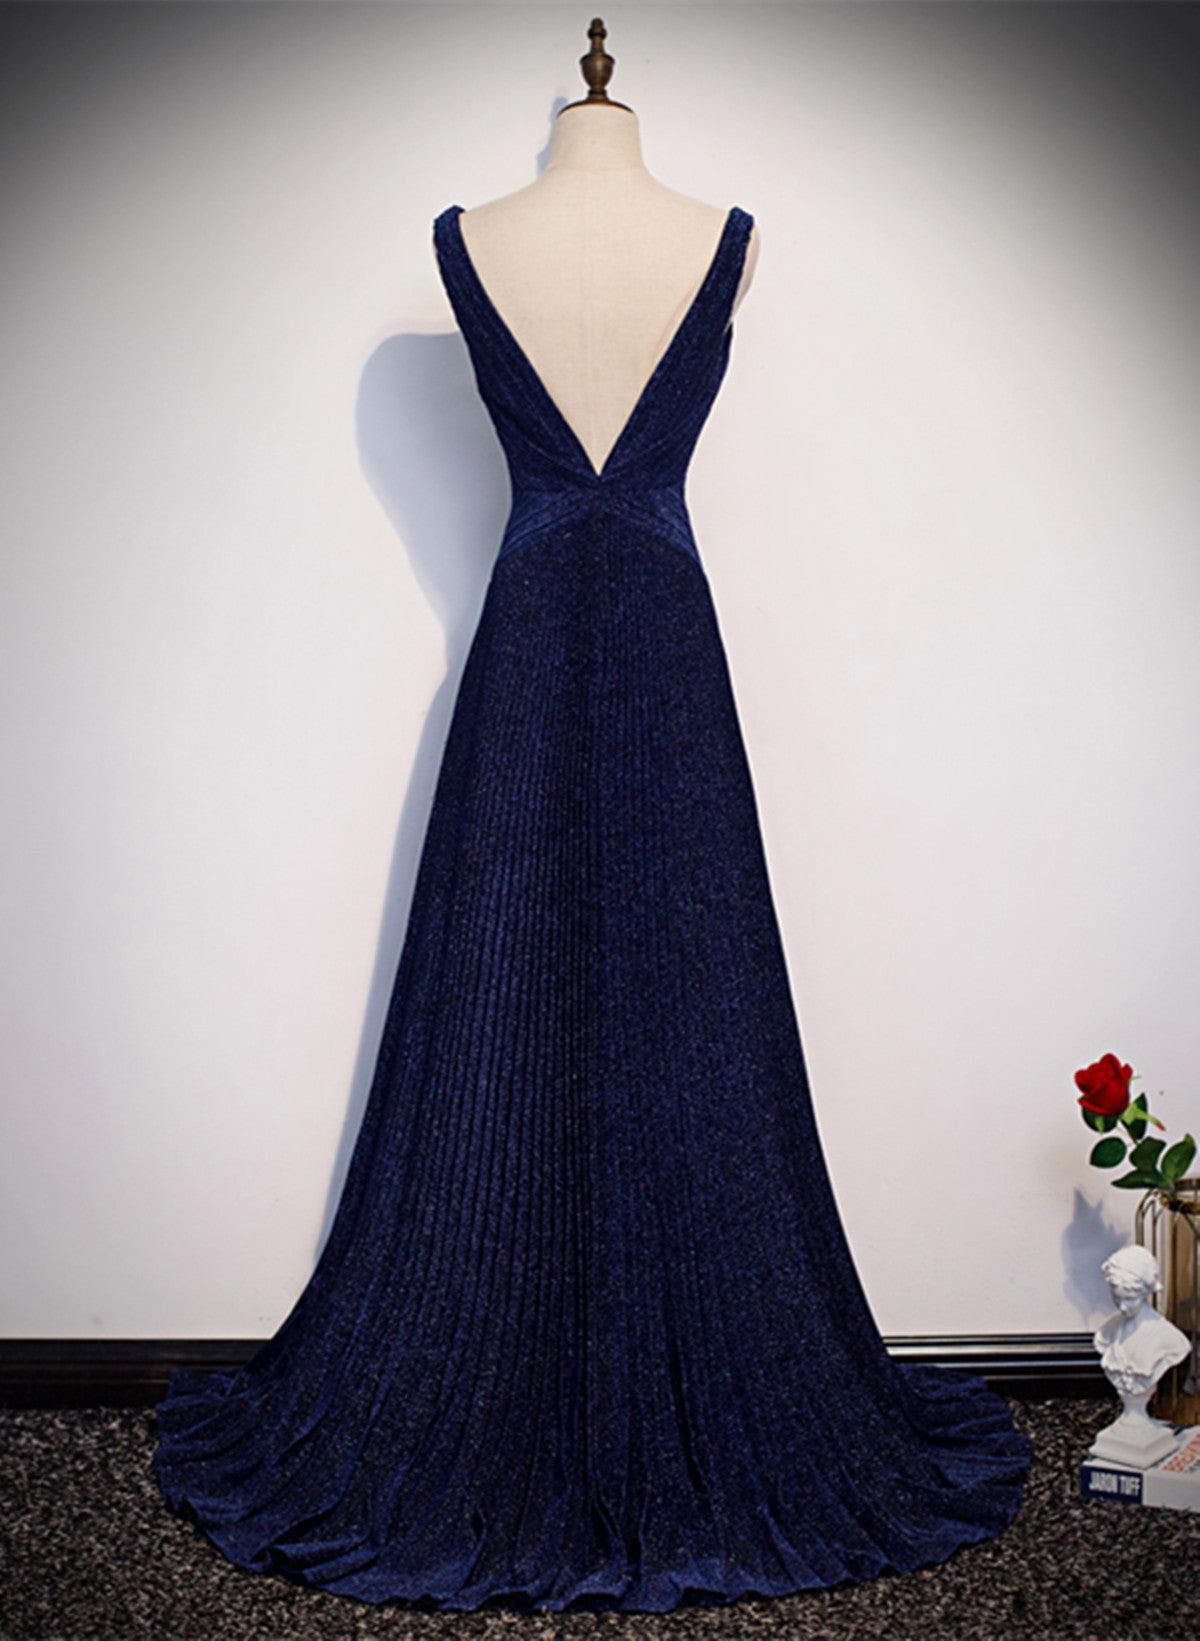 LOVECCRA-line Navy Blue V-neckline Long Party Dress, Navy Blue Long Prom Dress